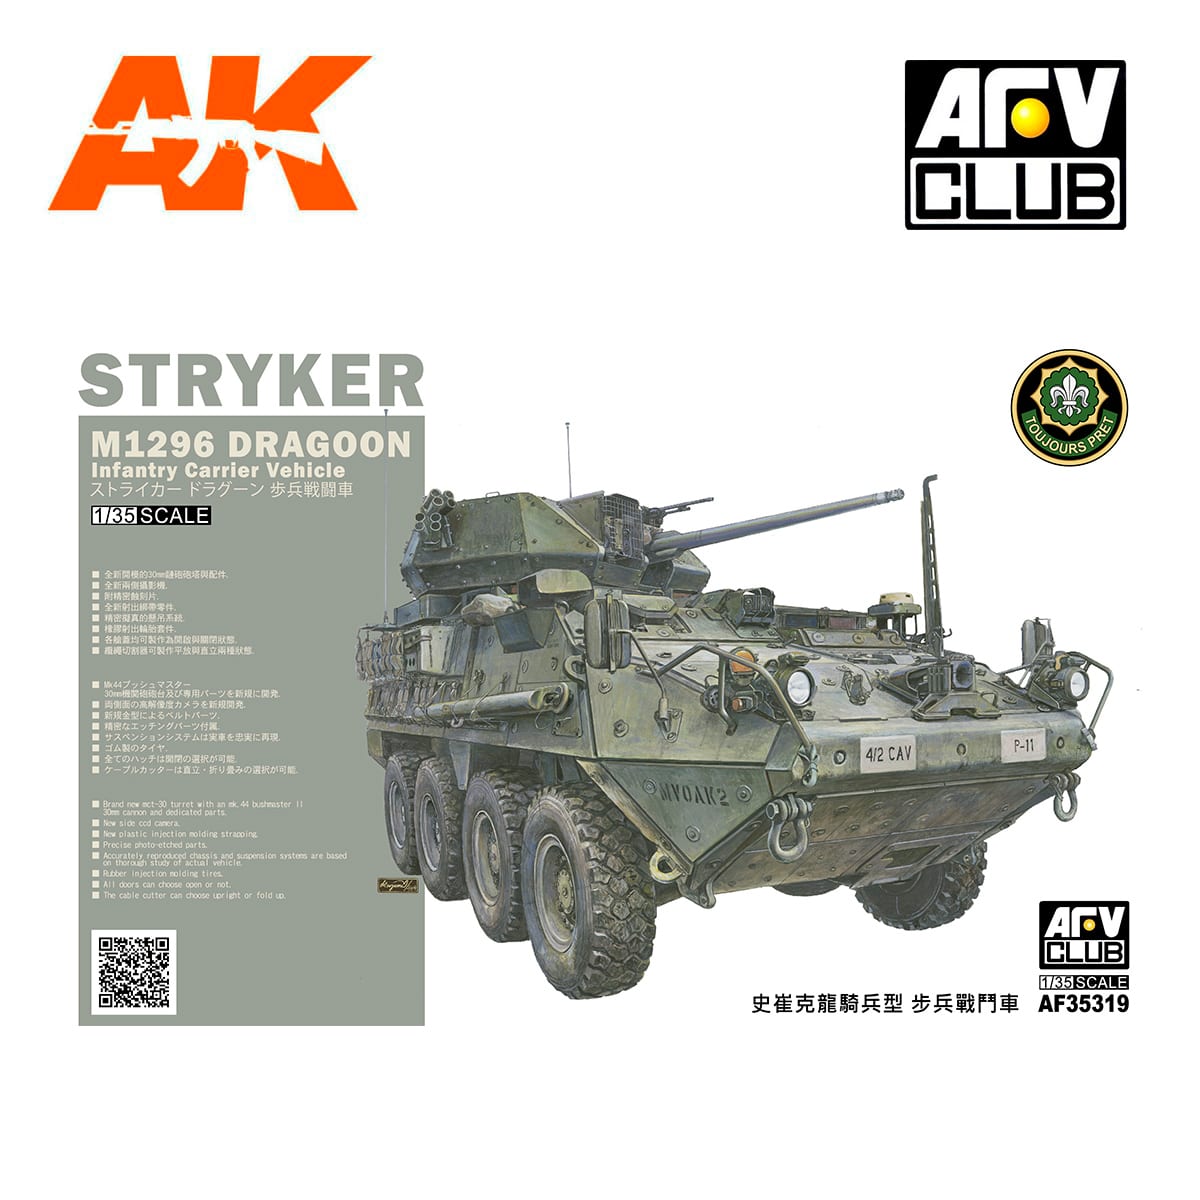 AFV Club AF35319 US Army M1296 Stryker Dragoon